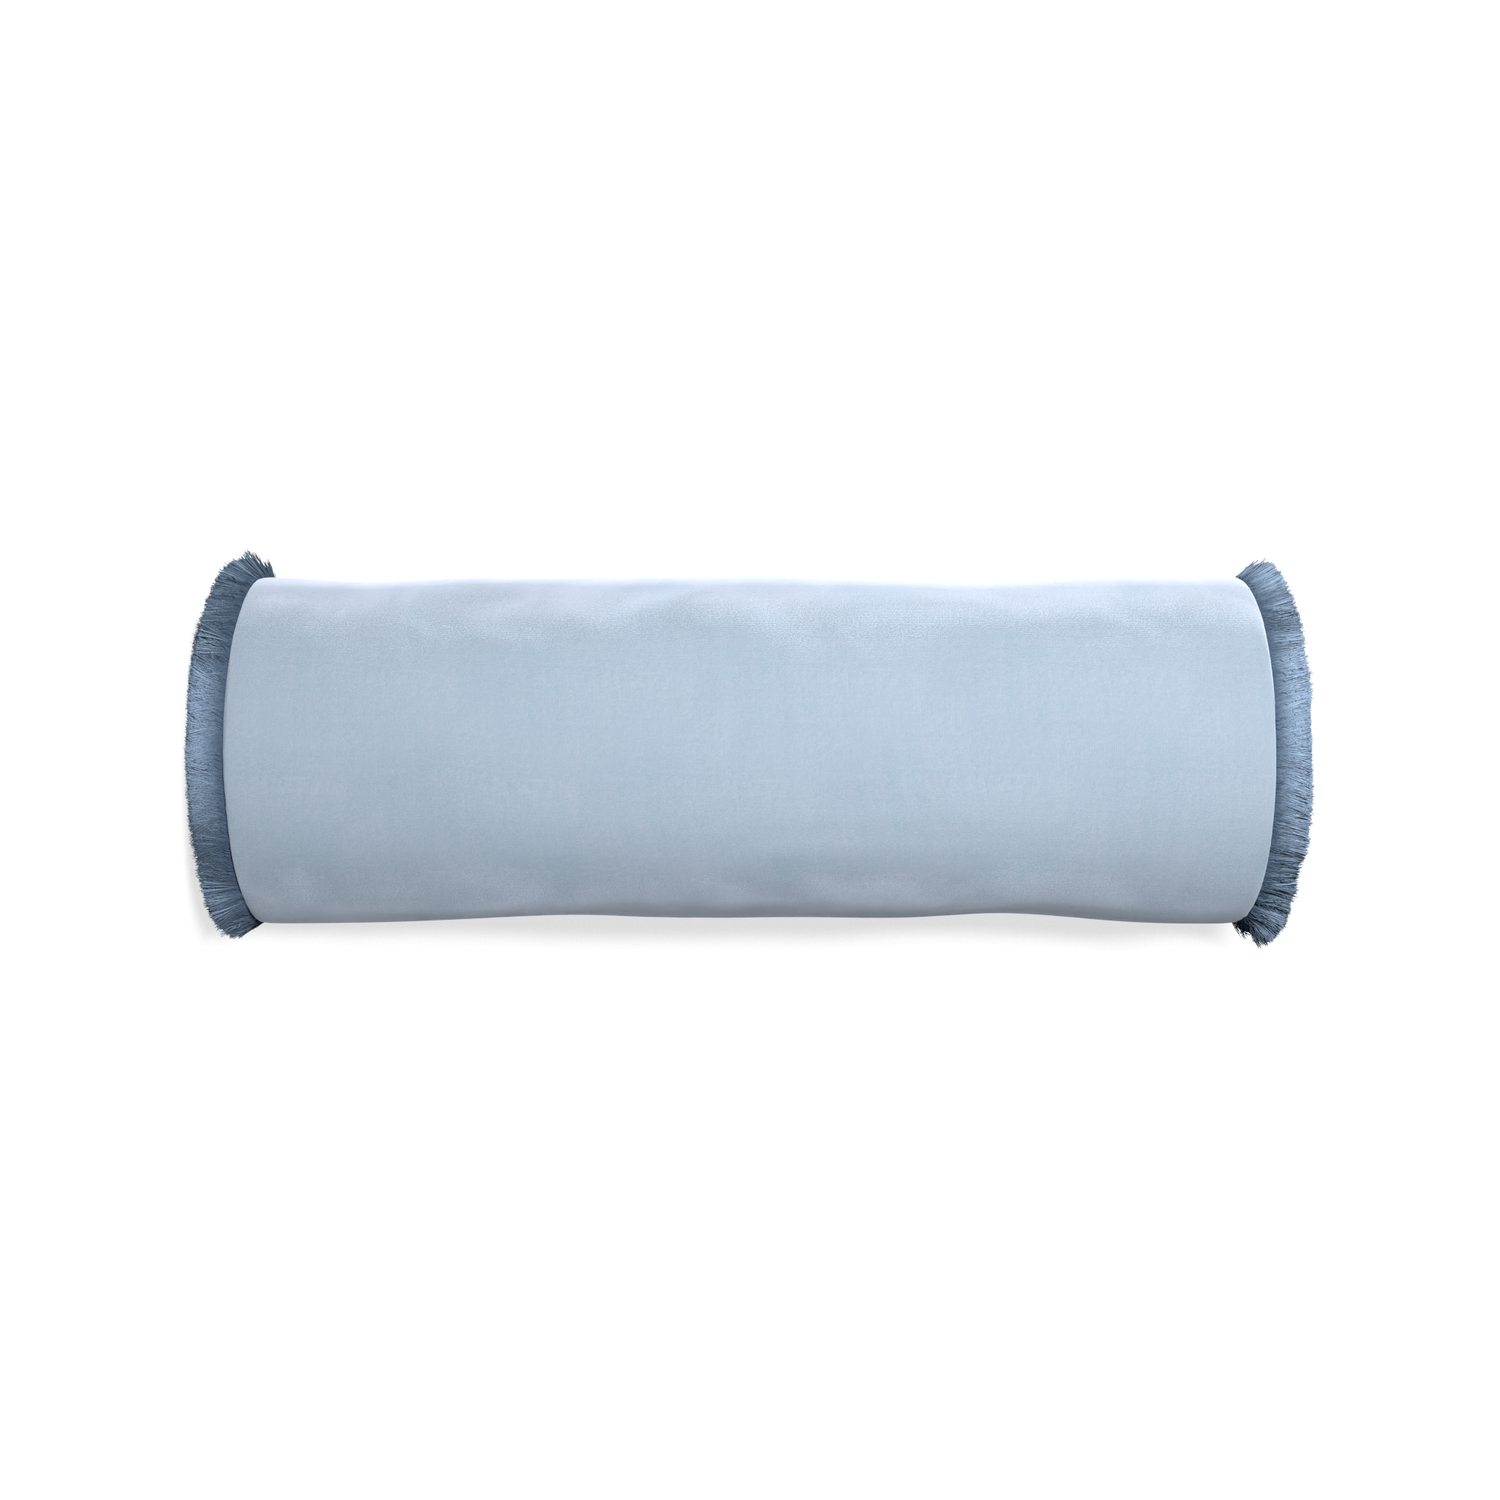 bolster light blue velvet pillow with sky blue fringe